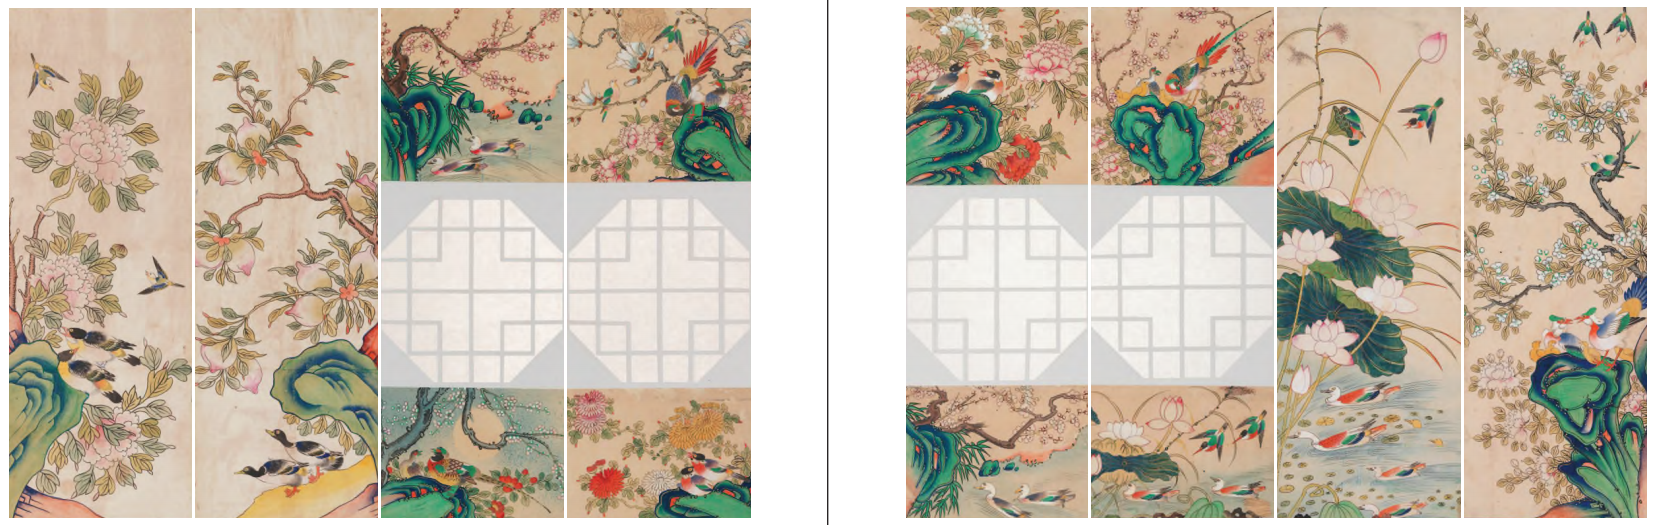 〈화조도 병풍〉, 19세기~20세기 초, 종이에 채색, 국립고궁박물관